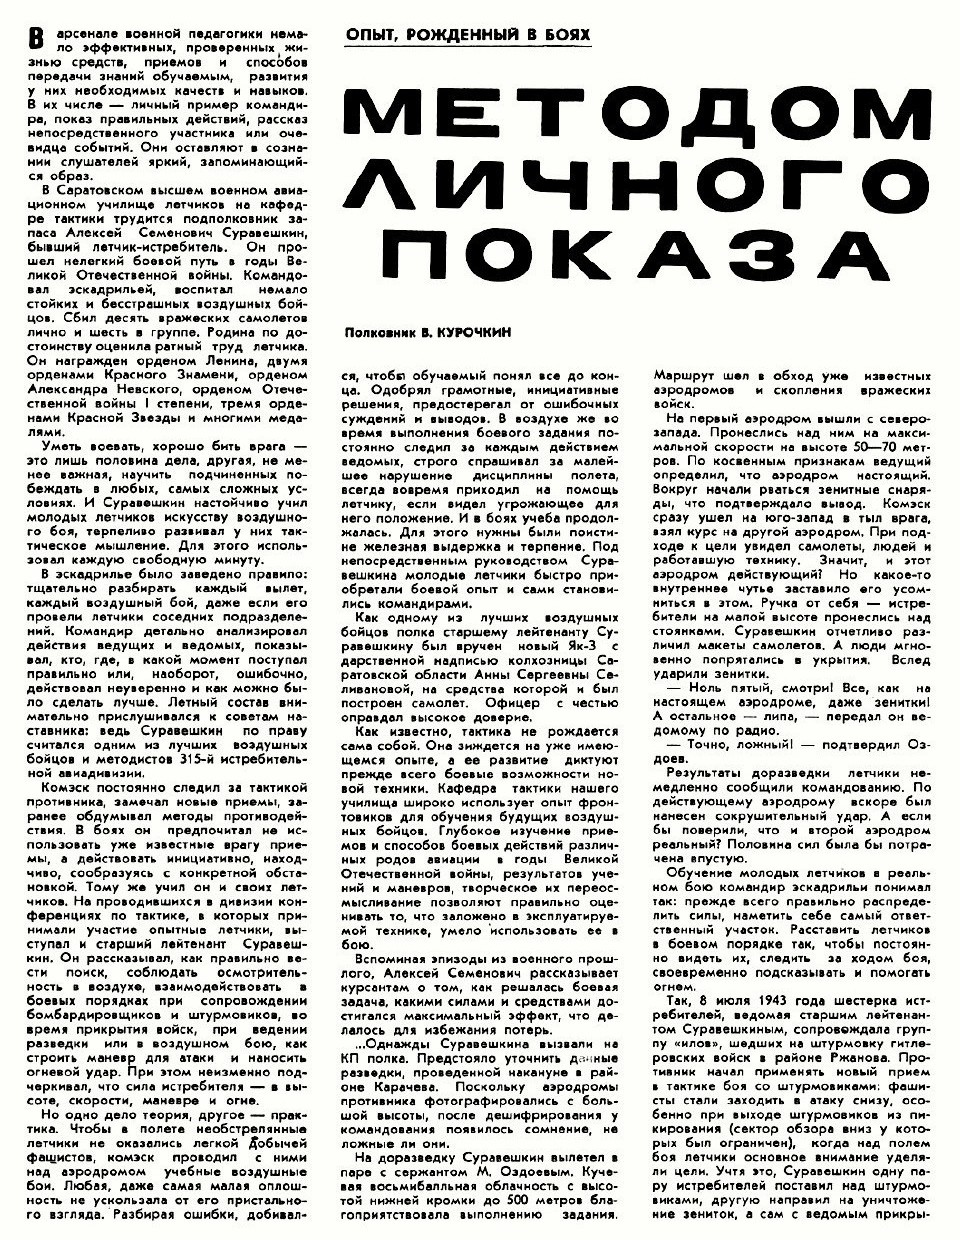 Суравешкин Алексей Семёнович на страницах прессы послевоенных лет